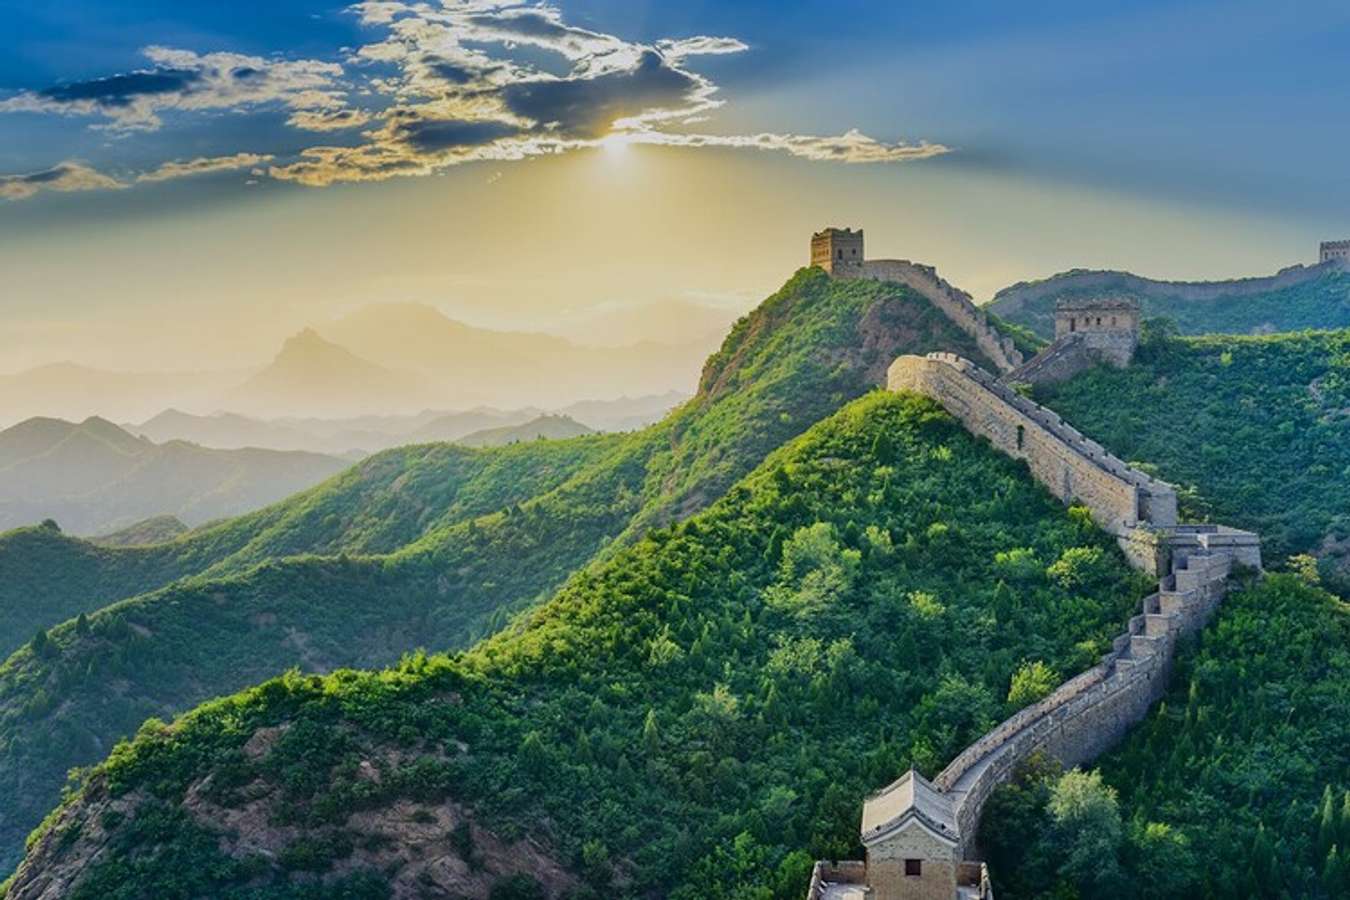 Trung Quốc là một điểm đến du lịch hấp dẫn mà bạn không thể bỏ lỡ. Những hình ảnh độc đáo về các địa điểm du lịch nổi tiếng của đất nước này sẽ khiến bạn cảm thấy hào hứng, muốn khám phá ngay từ bây giờ. Hãy cùng tìm hiểu và lên kế hoạch cho chuyến đi trọn vẹn của bạn.